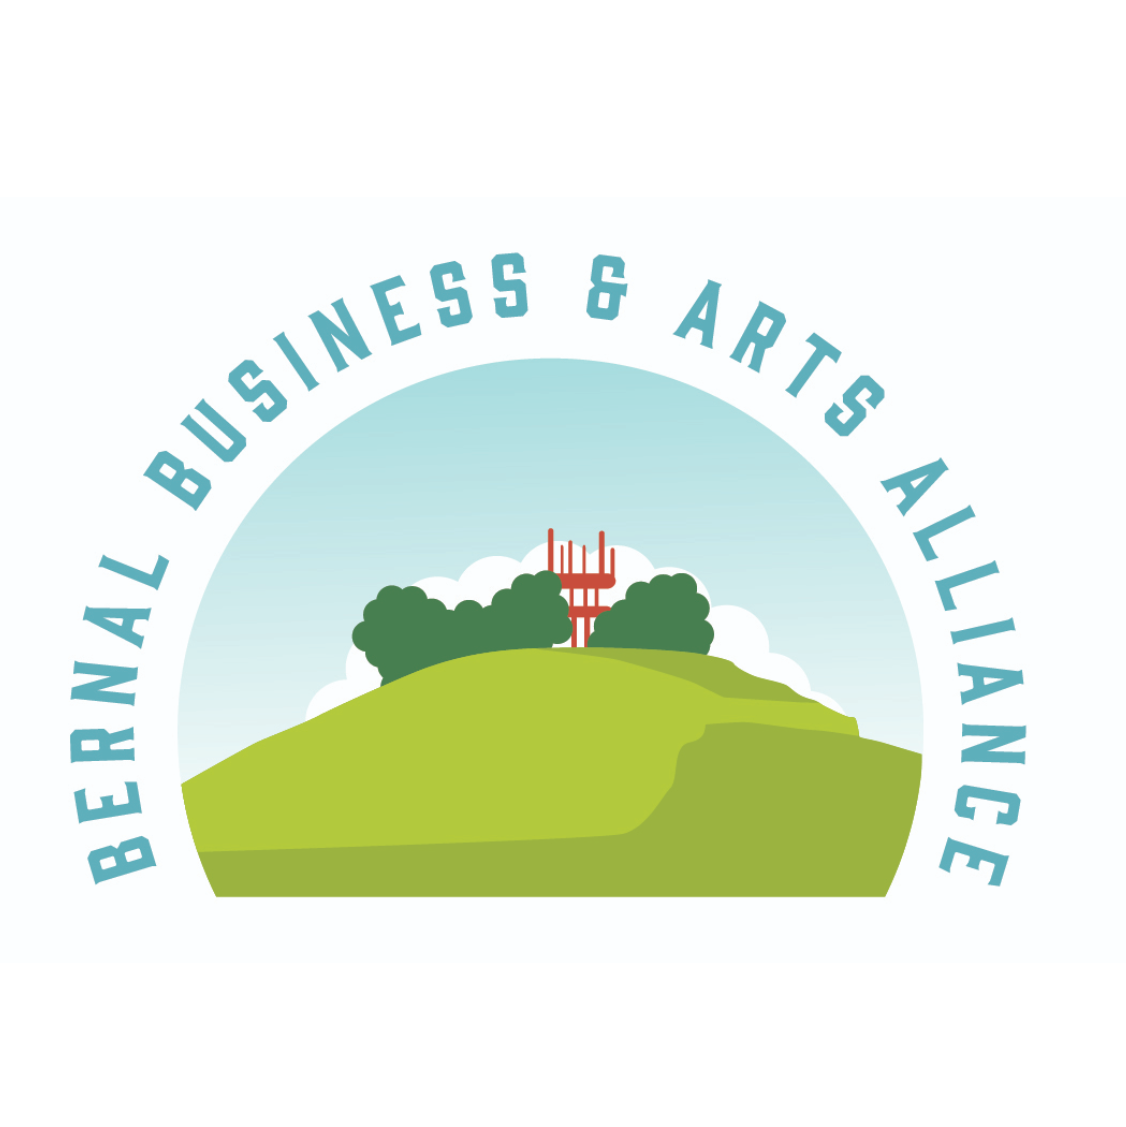 Bernal Business & Arts Alliance